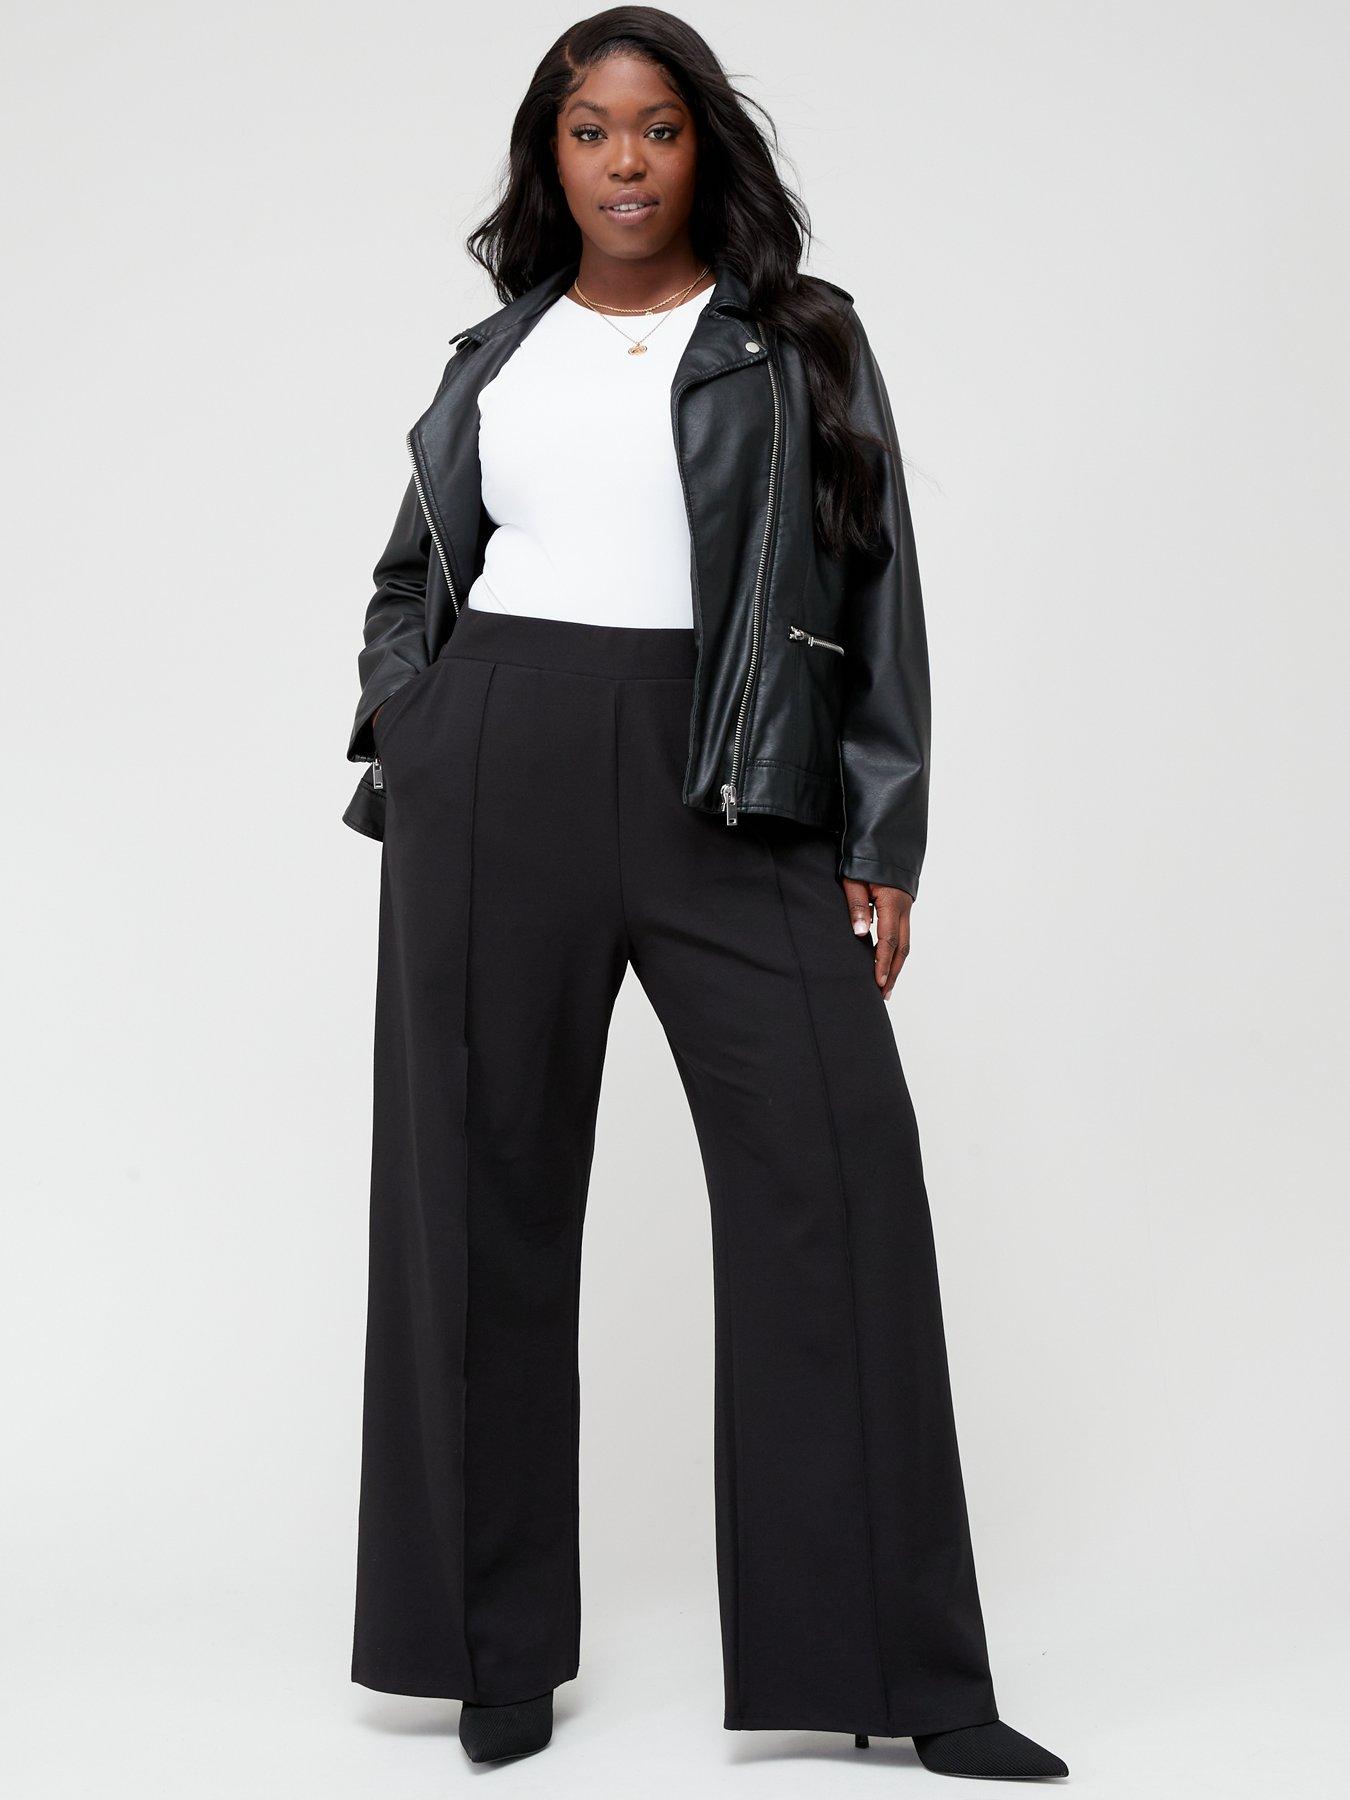 Lane Bryant 26 4x Plus Size Work Pant Boot Cut Grey Black Trousers Slacks |  eBay